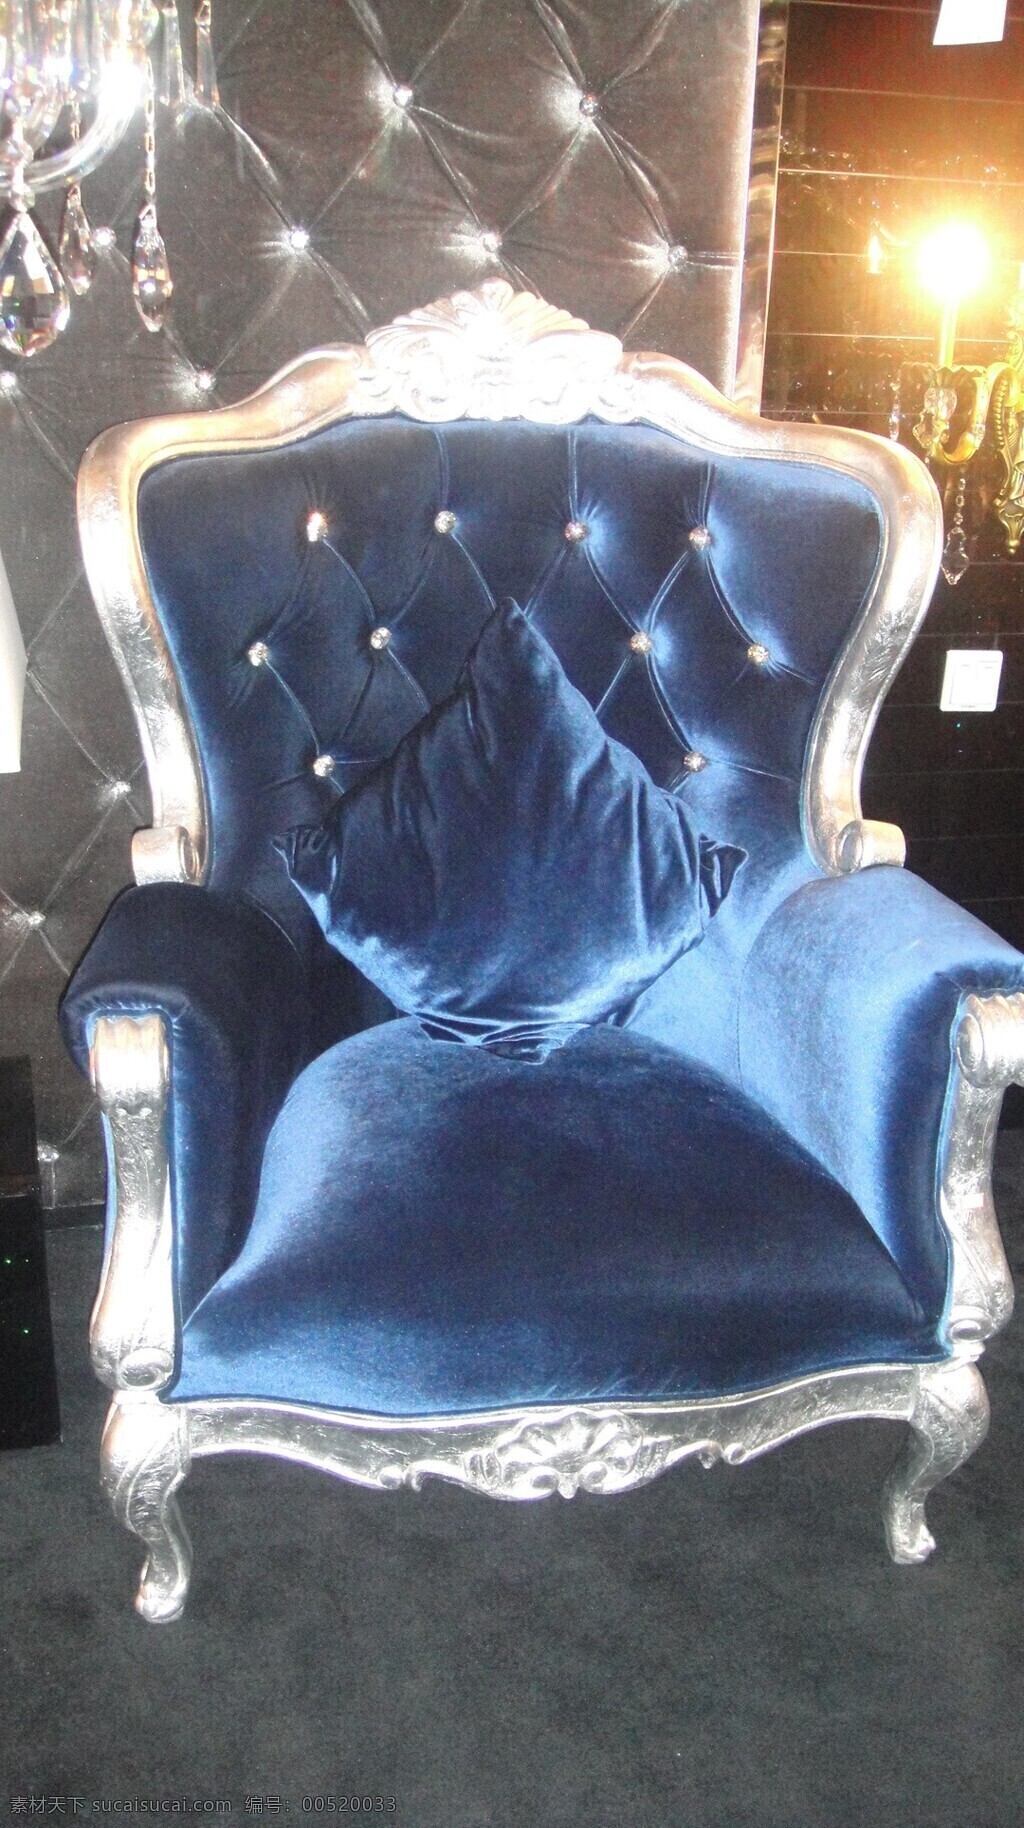 高贵 古典 家居 家居生活 家具 欧式 欧式沙发 欧洲 沙发 座椅 深蓝色 生活百科 家居装饰素材